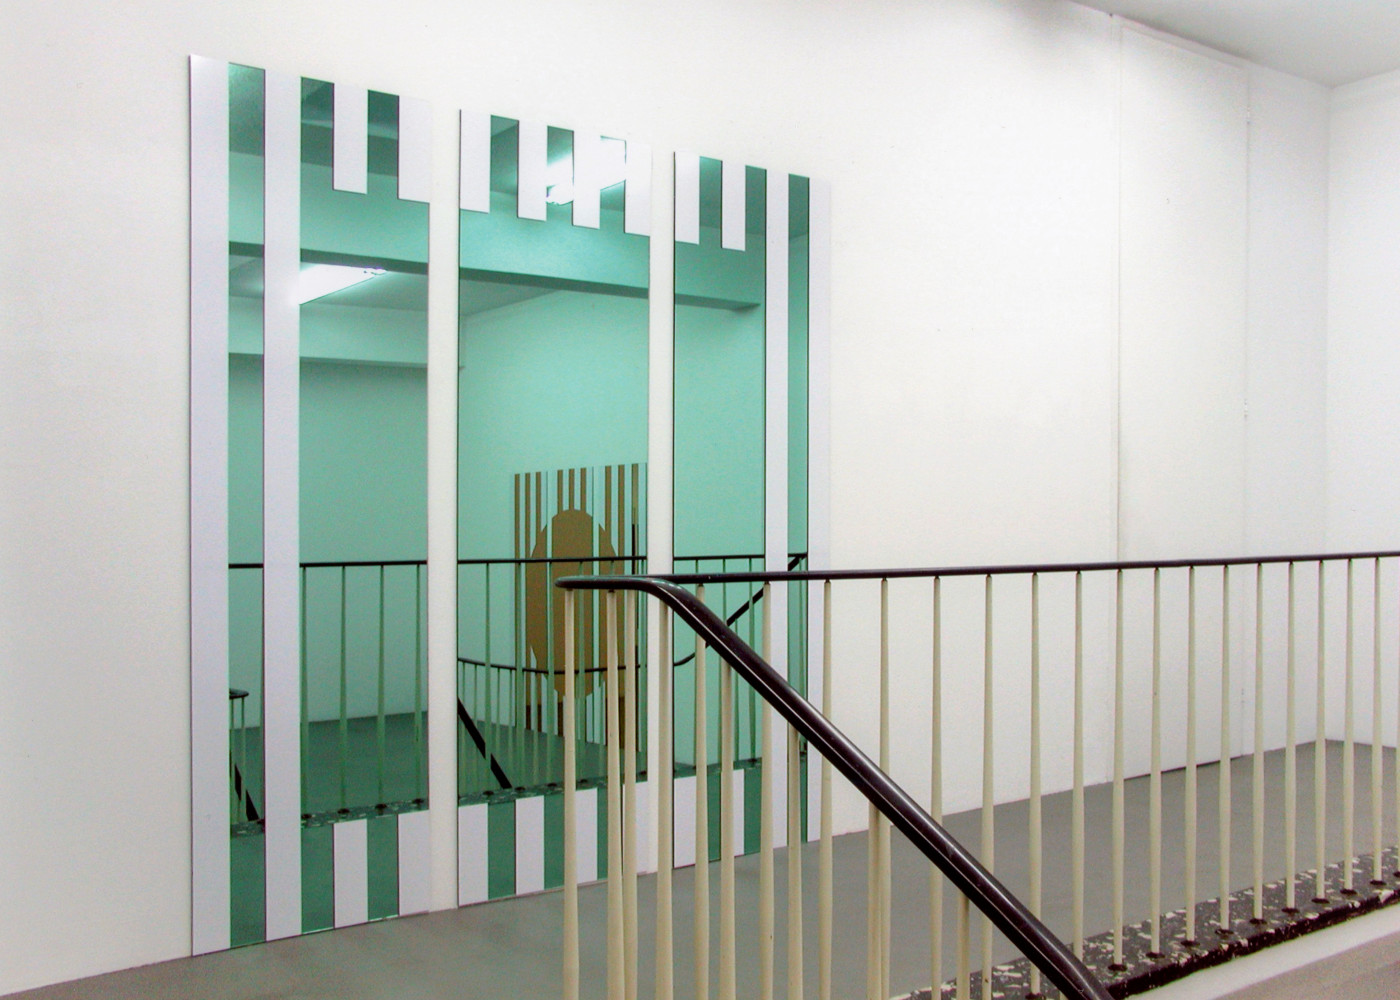 Daniel Buren, Installation view, Buchmann Galerie Köln, 2005